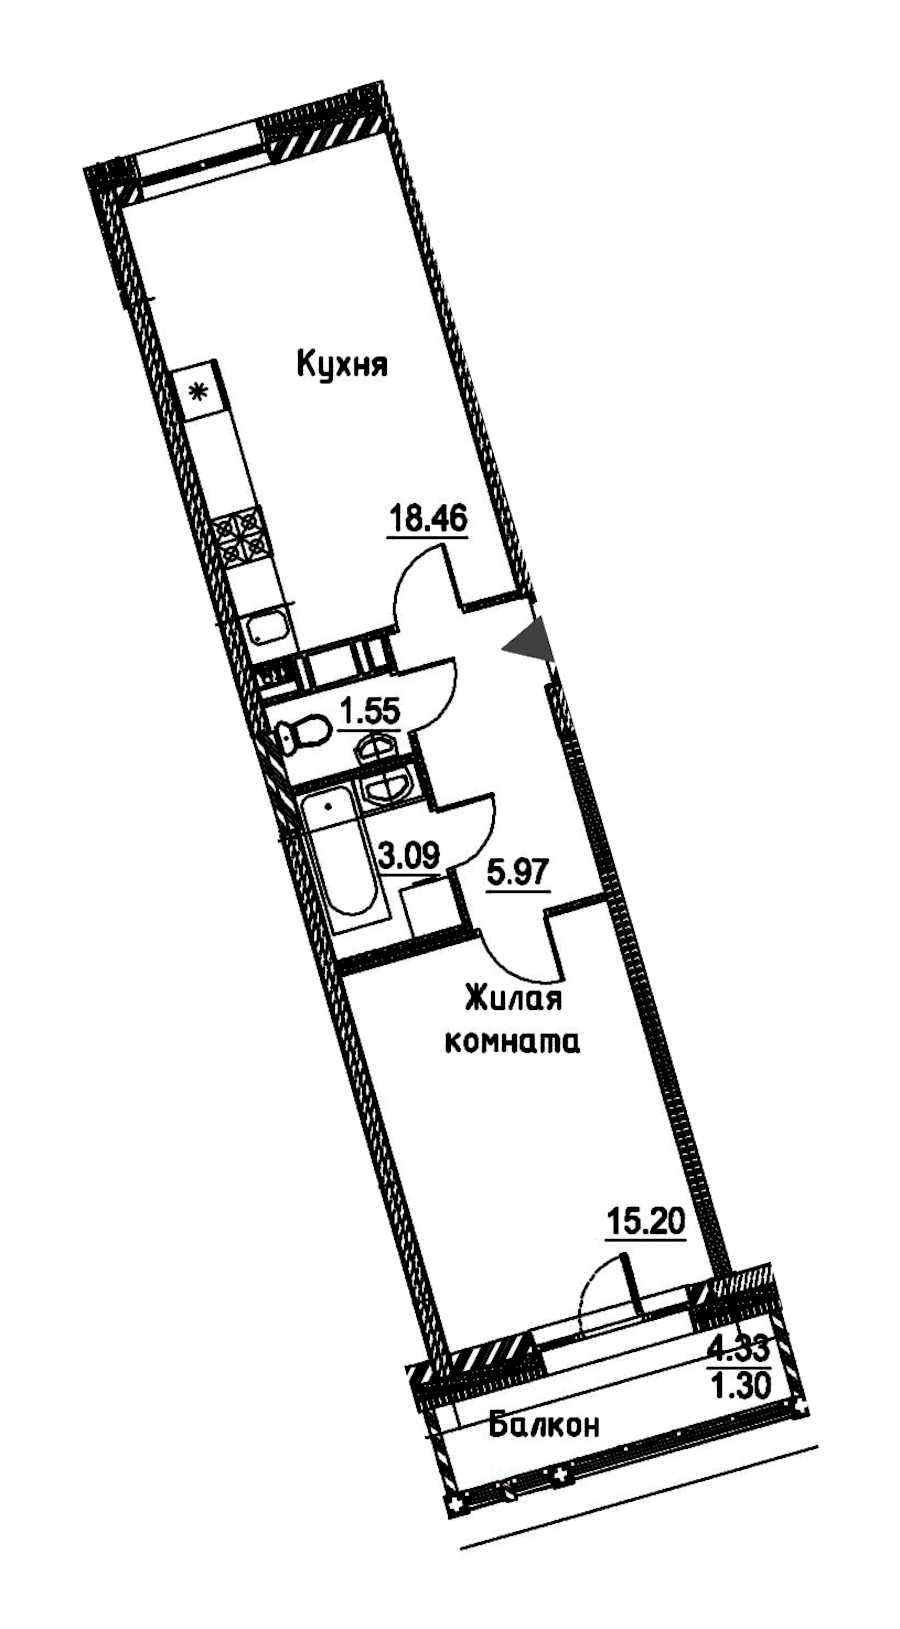 Однокомнатная квартира в : площадь 45.57 м2 , этаж: 7 - 8 – купить в Санкт-Петербурге